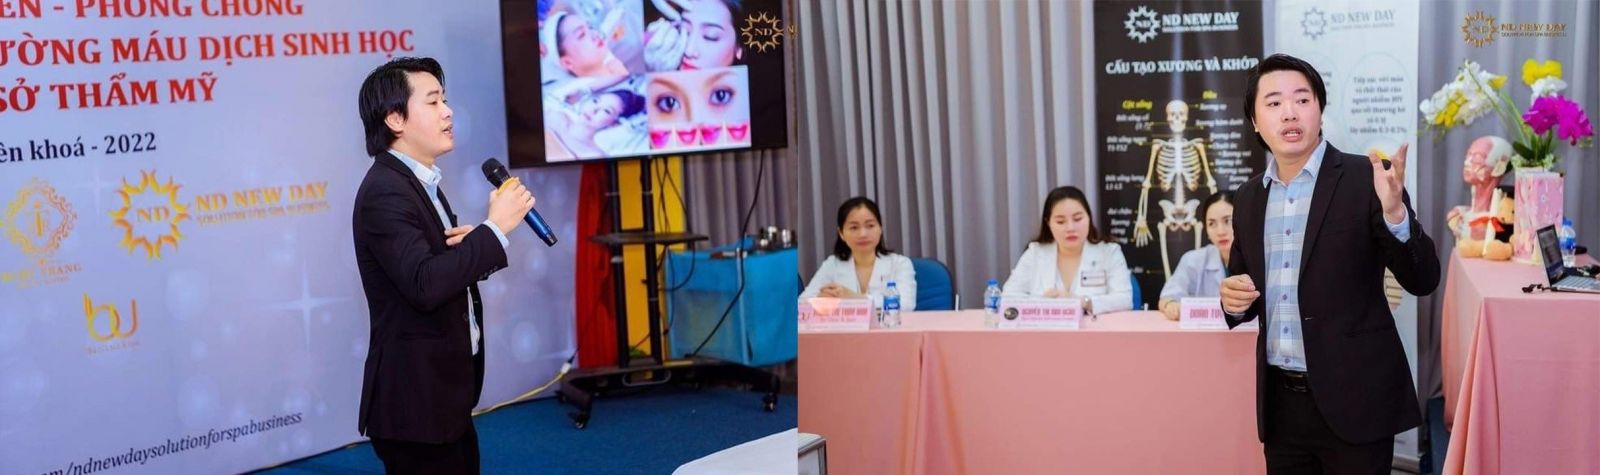 Bác sĩ Trung Nguyễn tham gia đào tạo lớp y tế phòng chống lây nhiễm qua đường máu và sinh dịch học